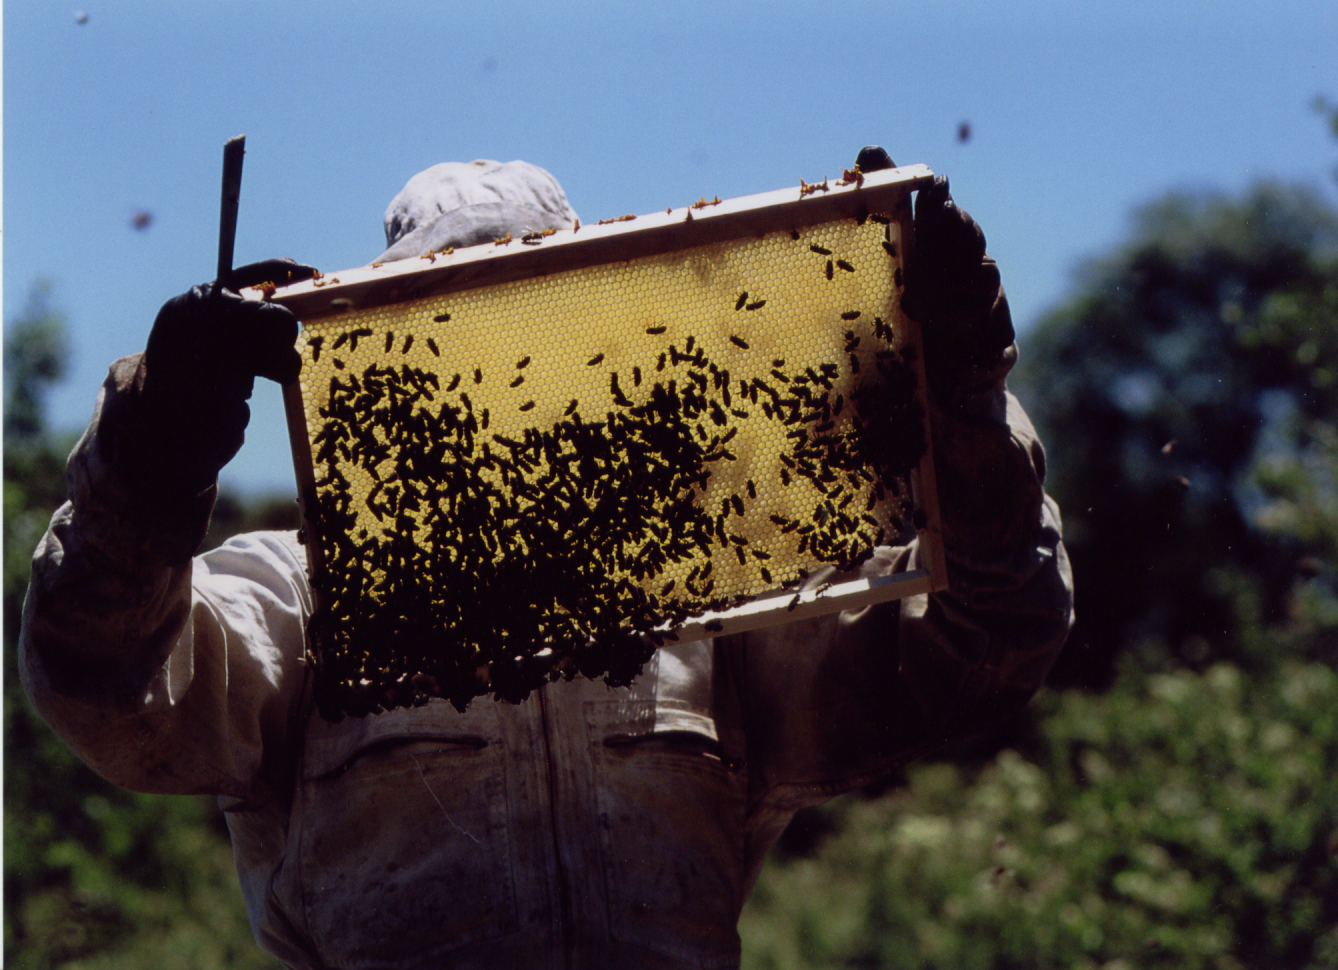 Apiculteur manipulant des abeilles